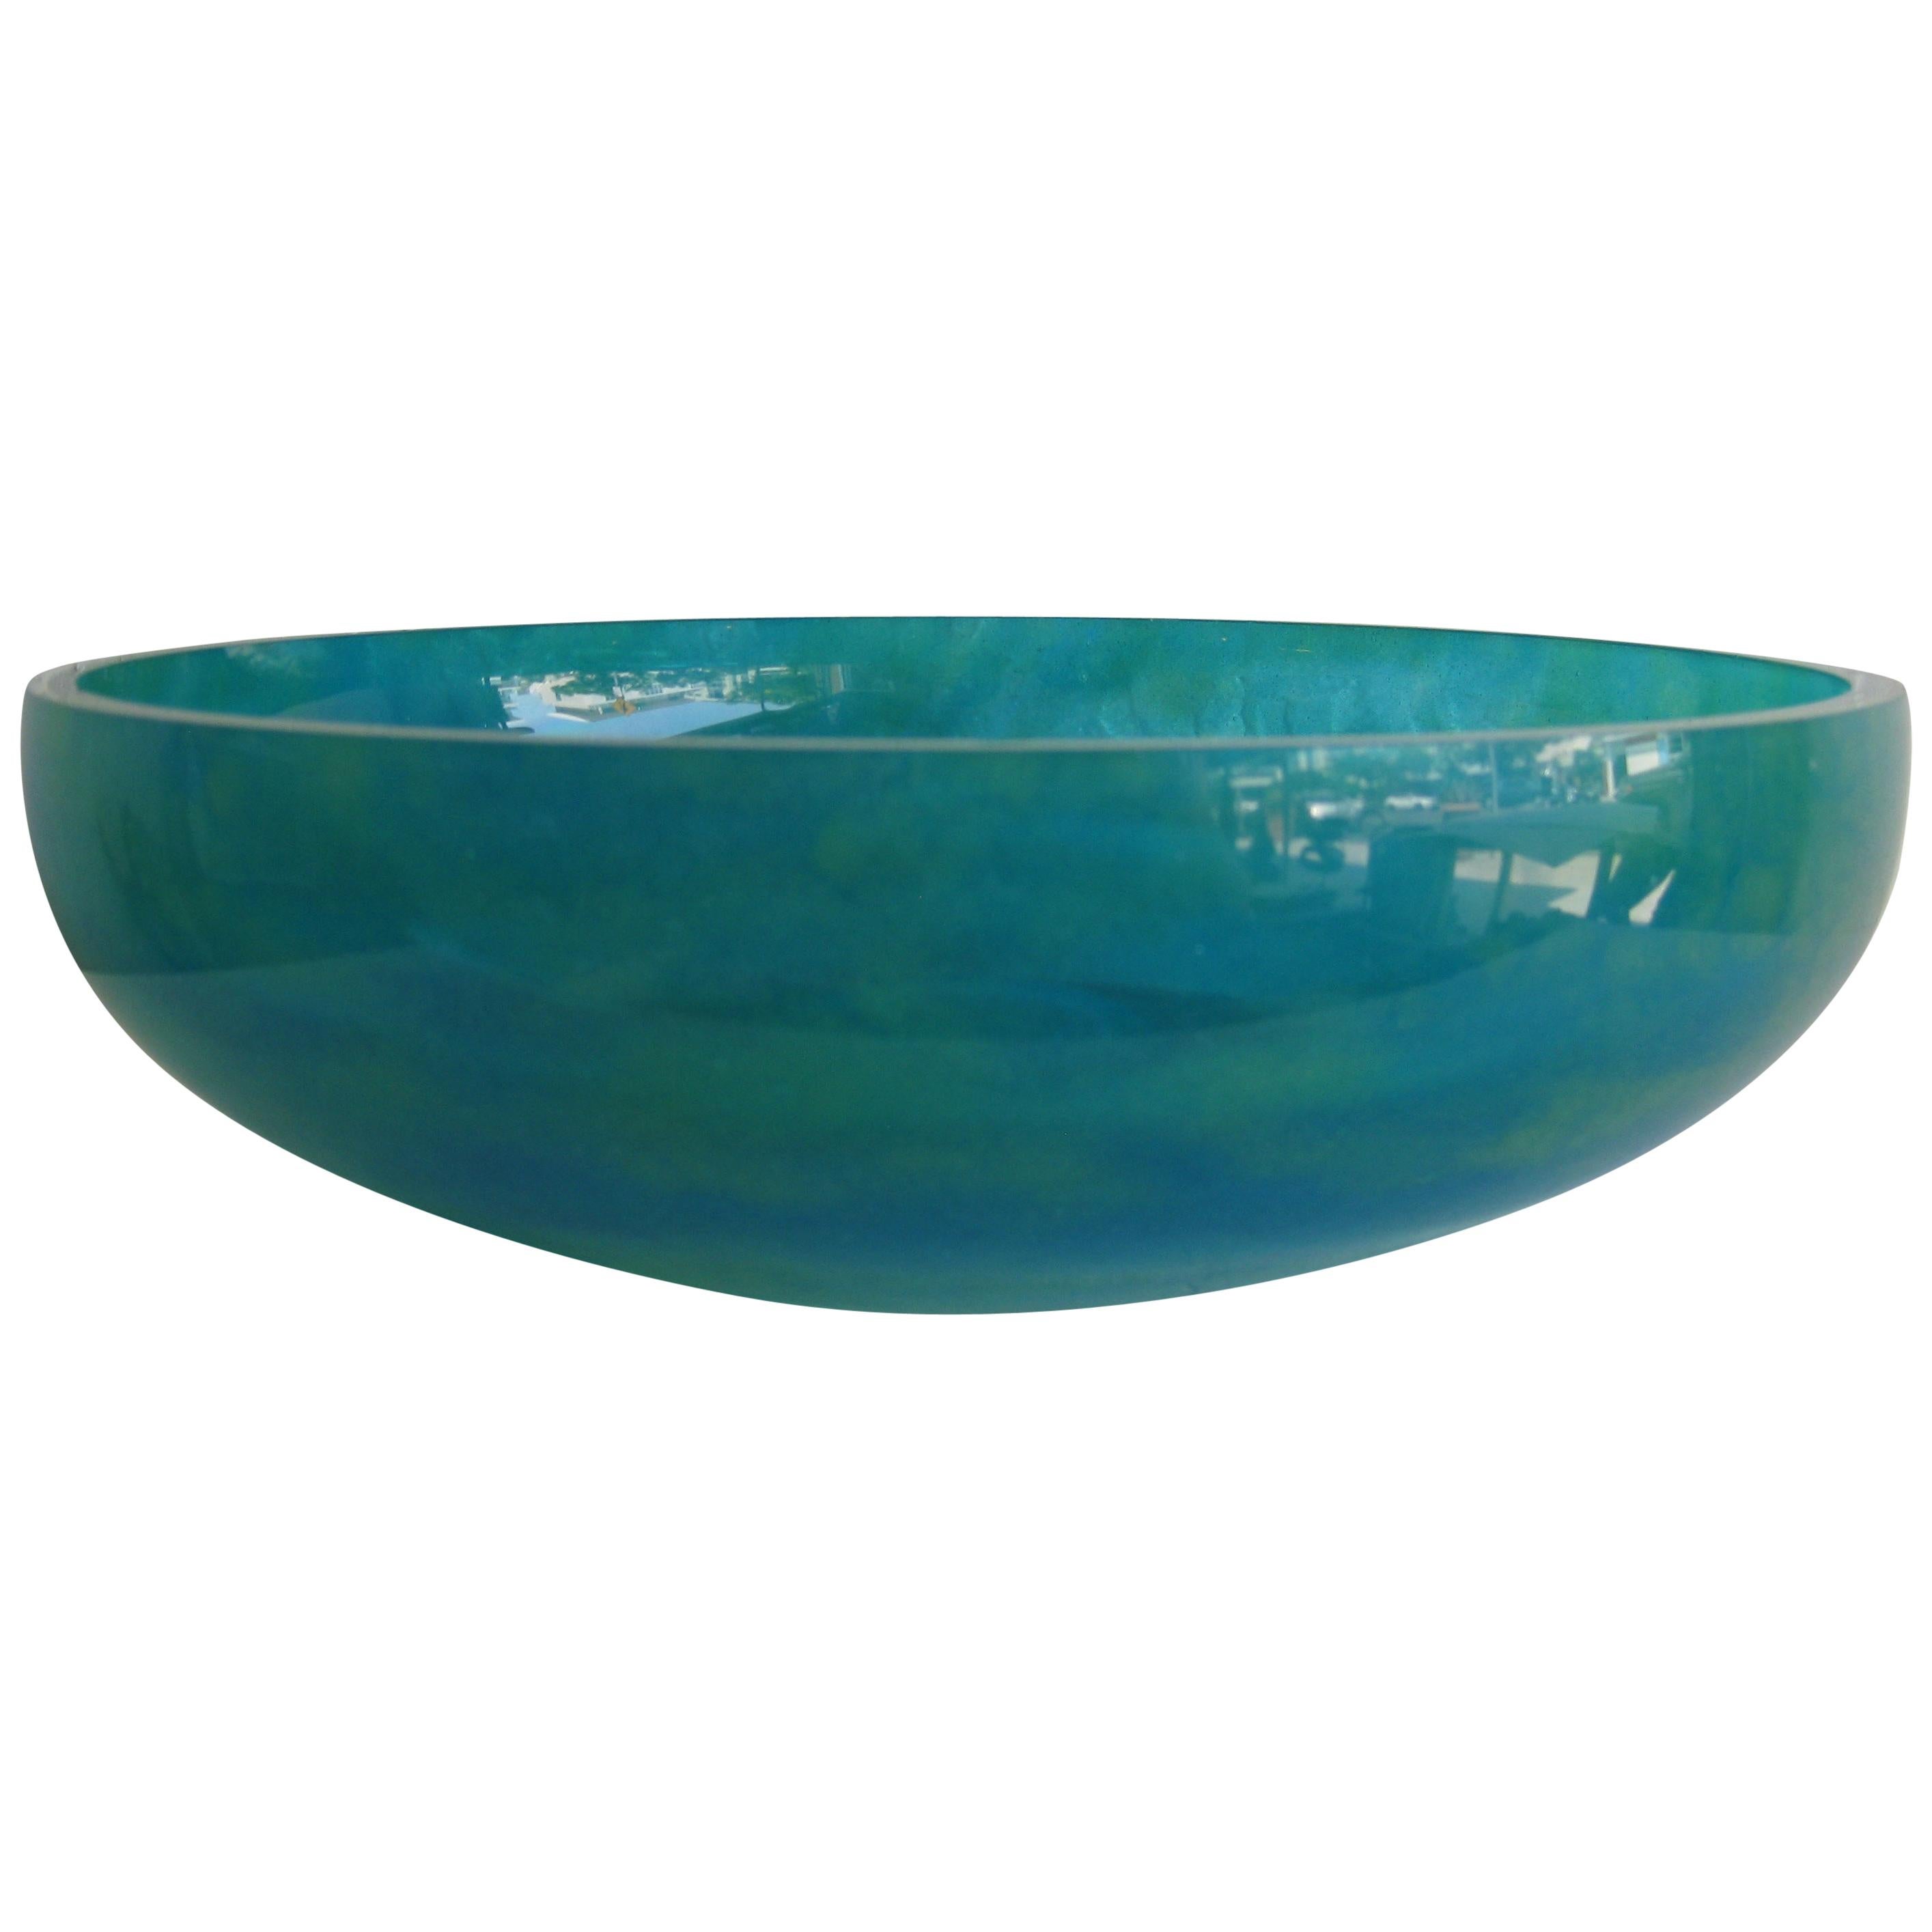 Daum of France Vibrant Green Pate de Verre Large Glass Centerpiece Bowl Vase